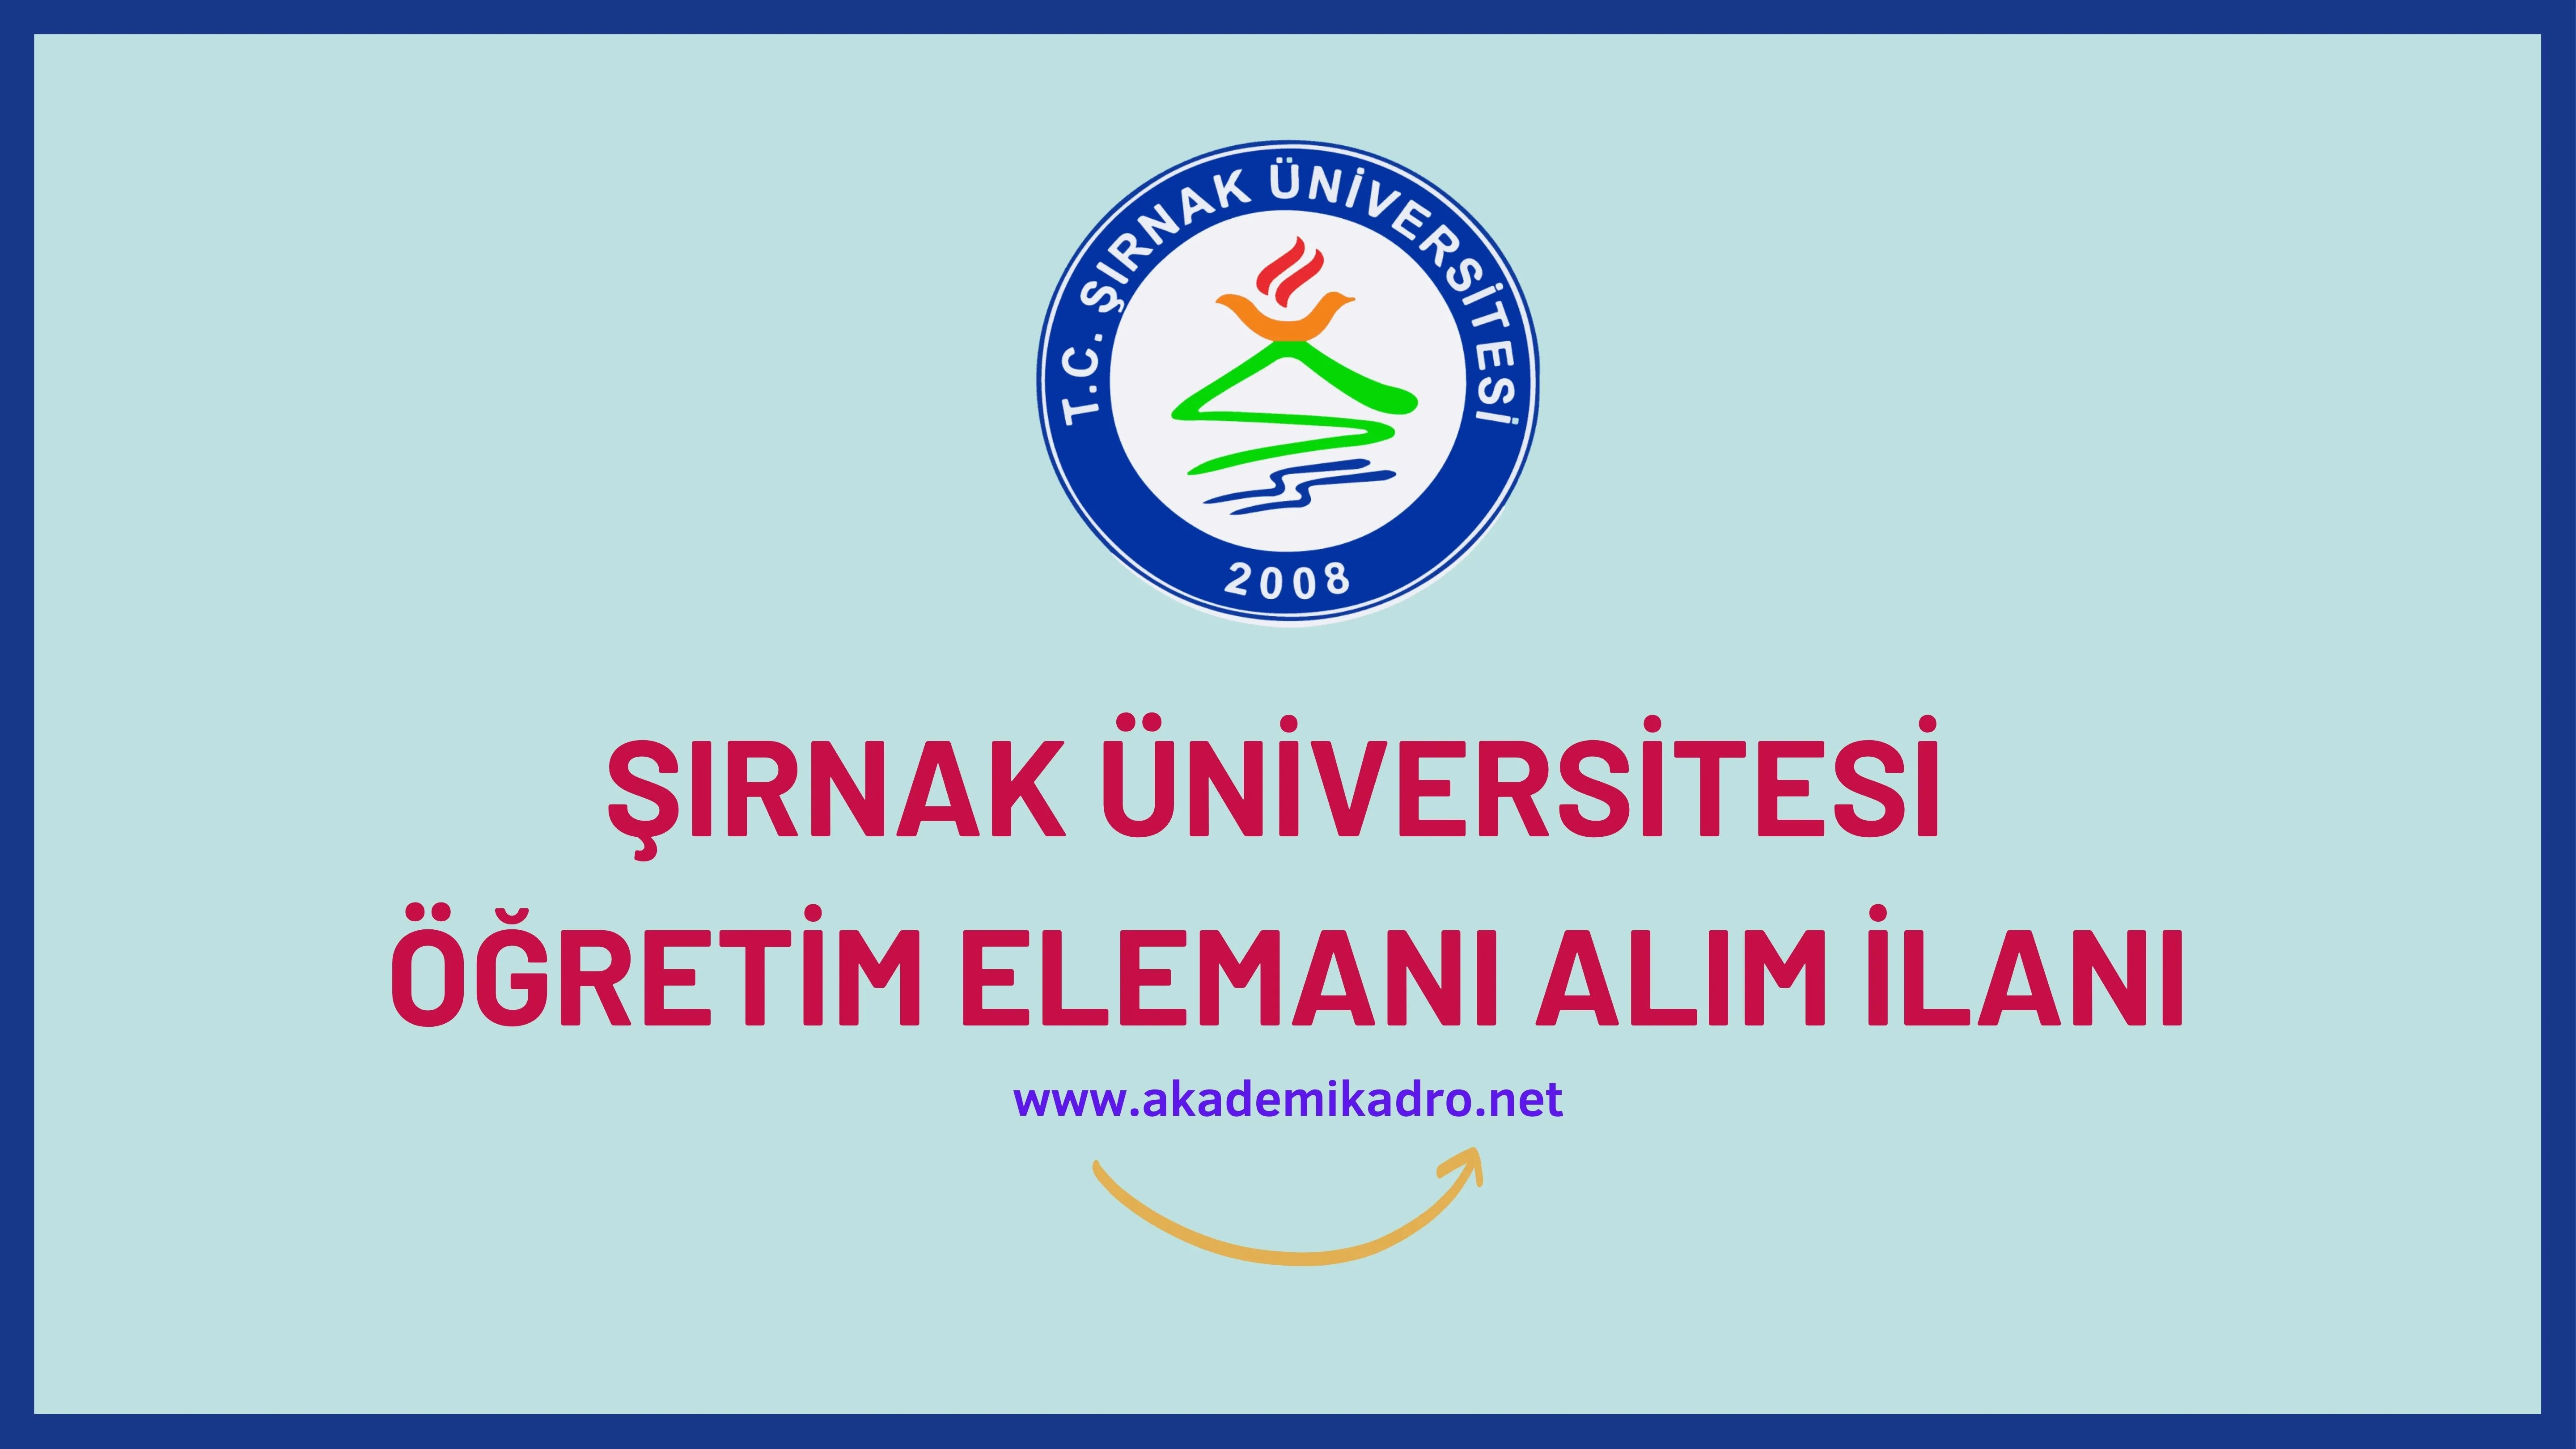 Şırnak Üniversitesi Öğretim görevlisi ve öğretim üyesi olmak üzere toplam 12 Öğretim elemanı alacak.